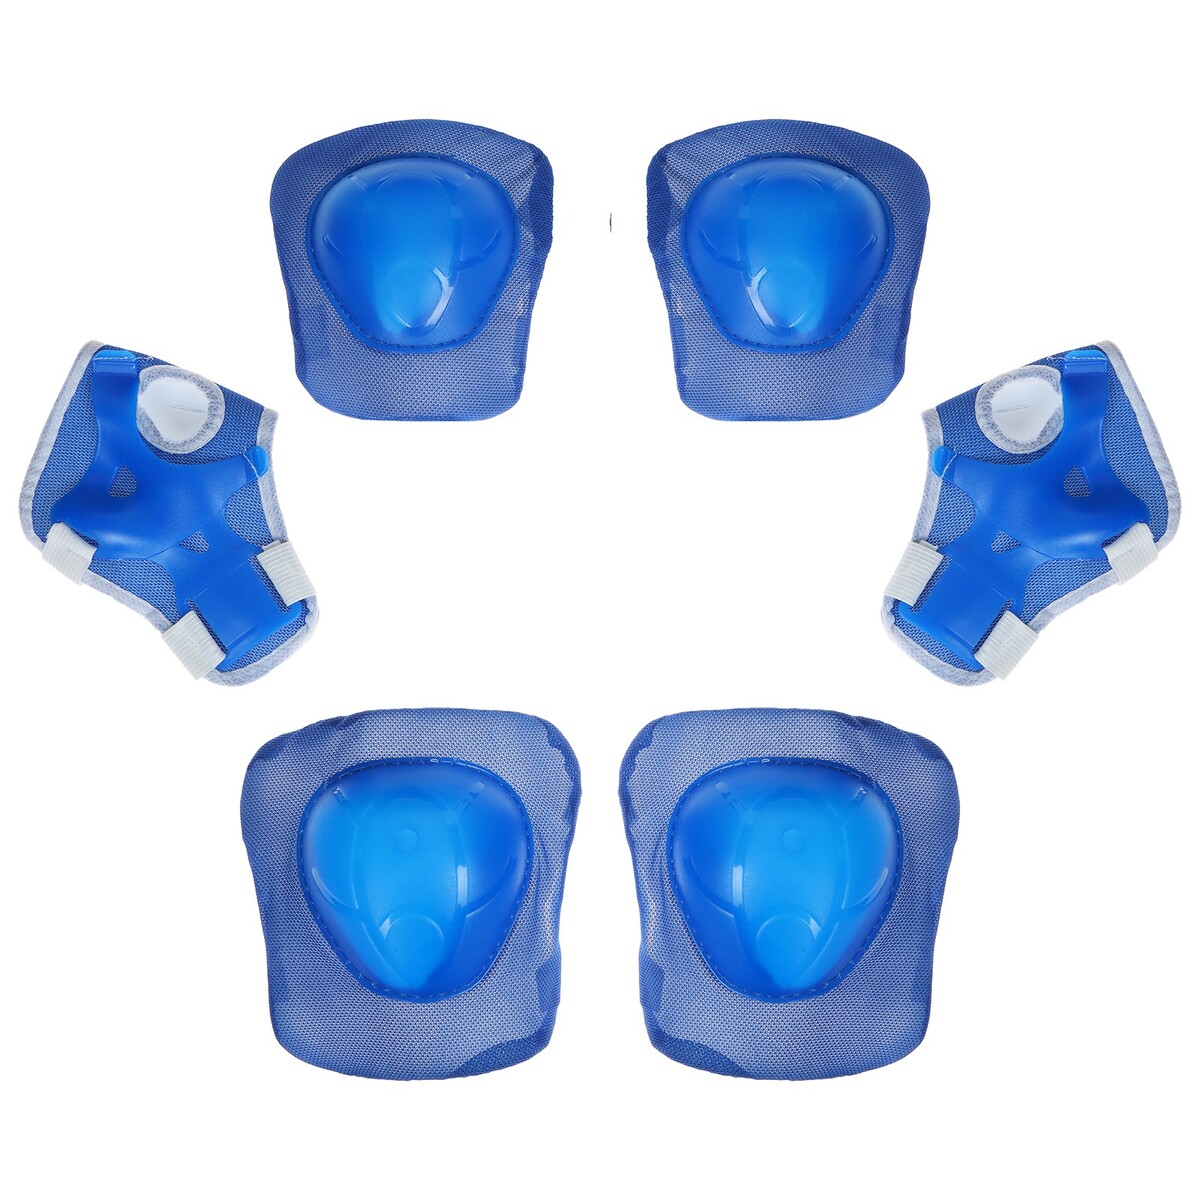 Защита роликовая onlytop, р. универсальный, цвет синий комплект защиты компания друзей налокотники наколенники полуперчатки синий jb0208468